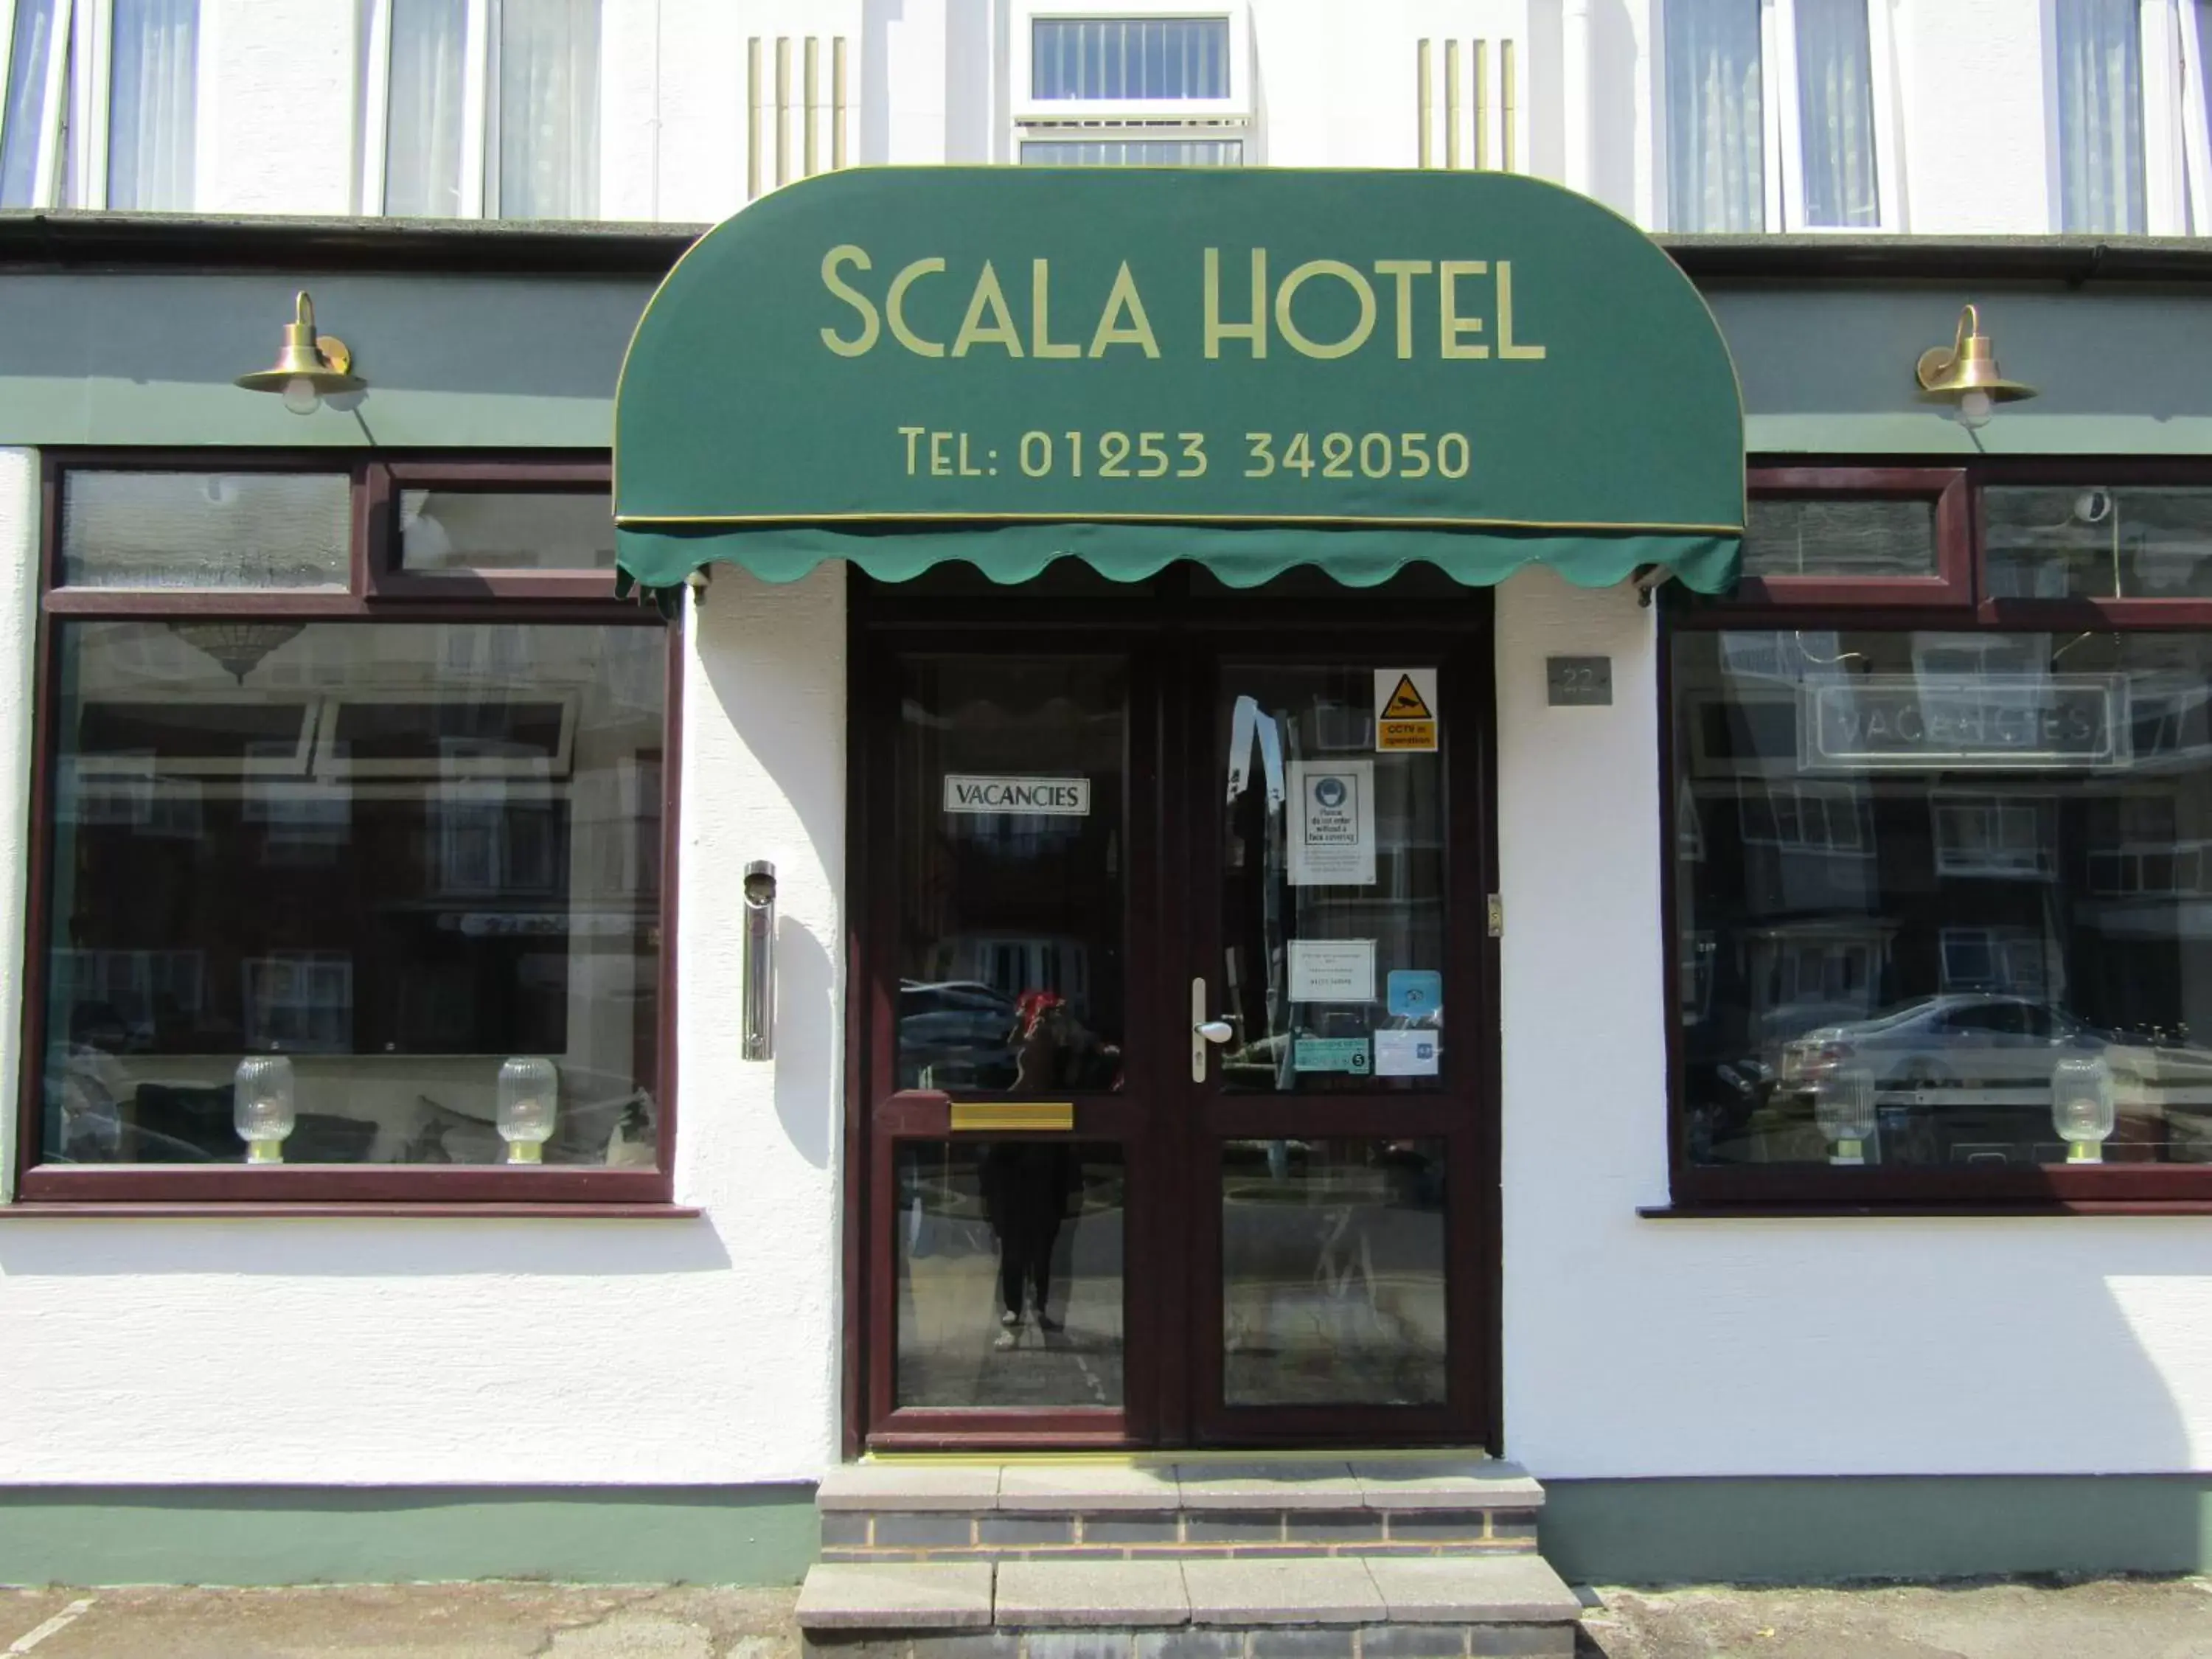 Facade/entrance in The Scala Hotel